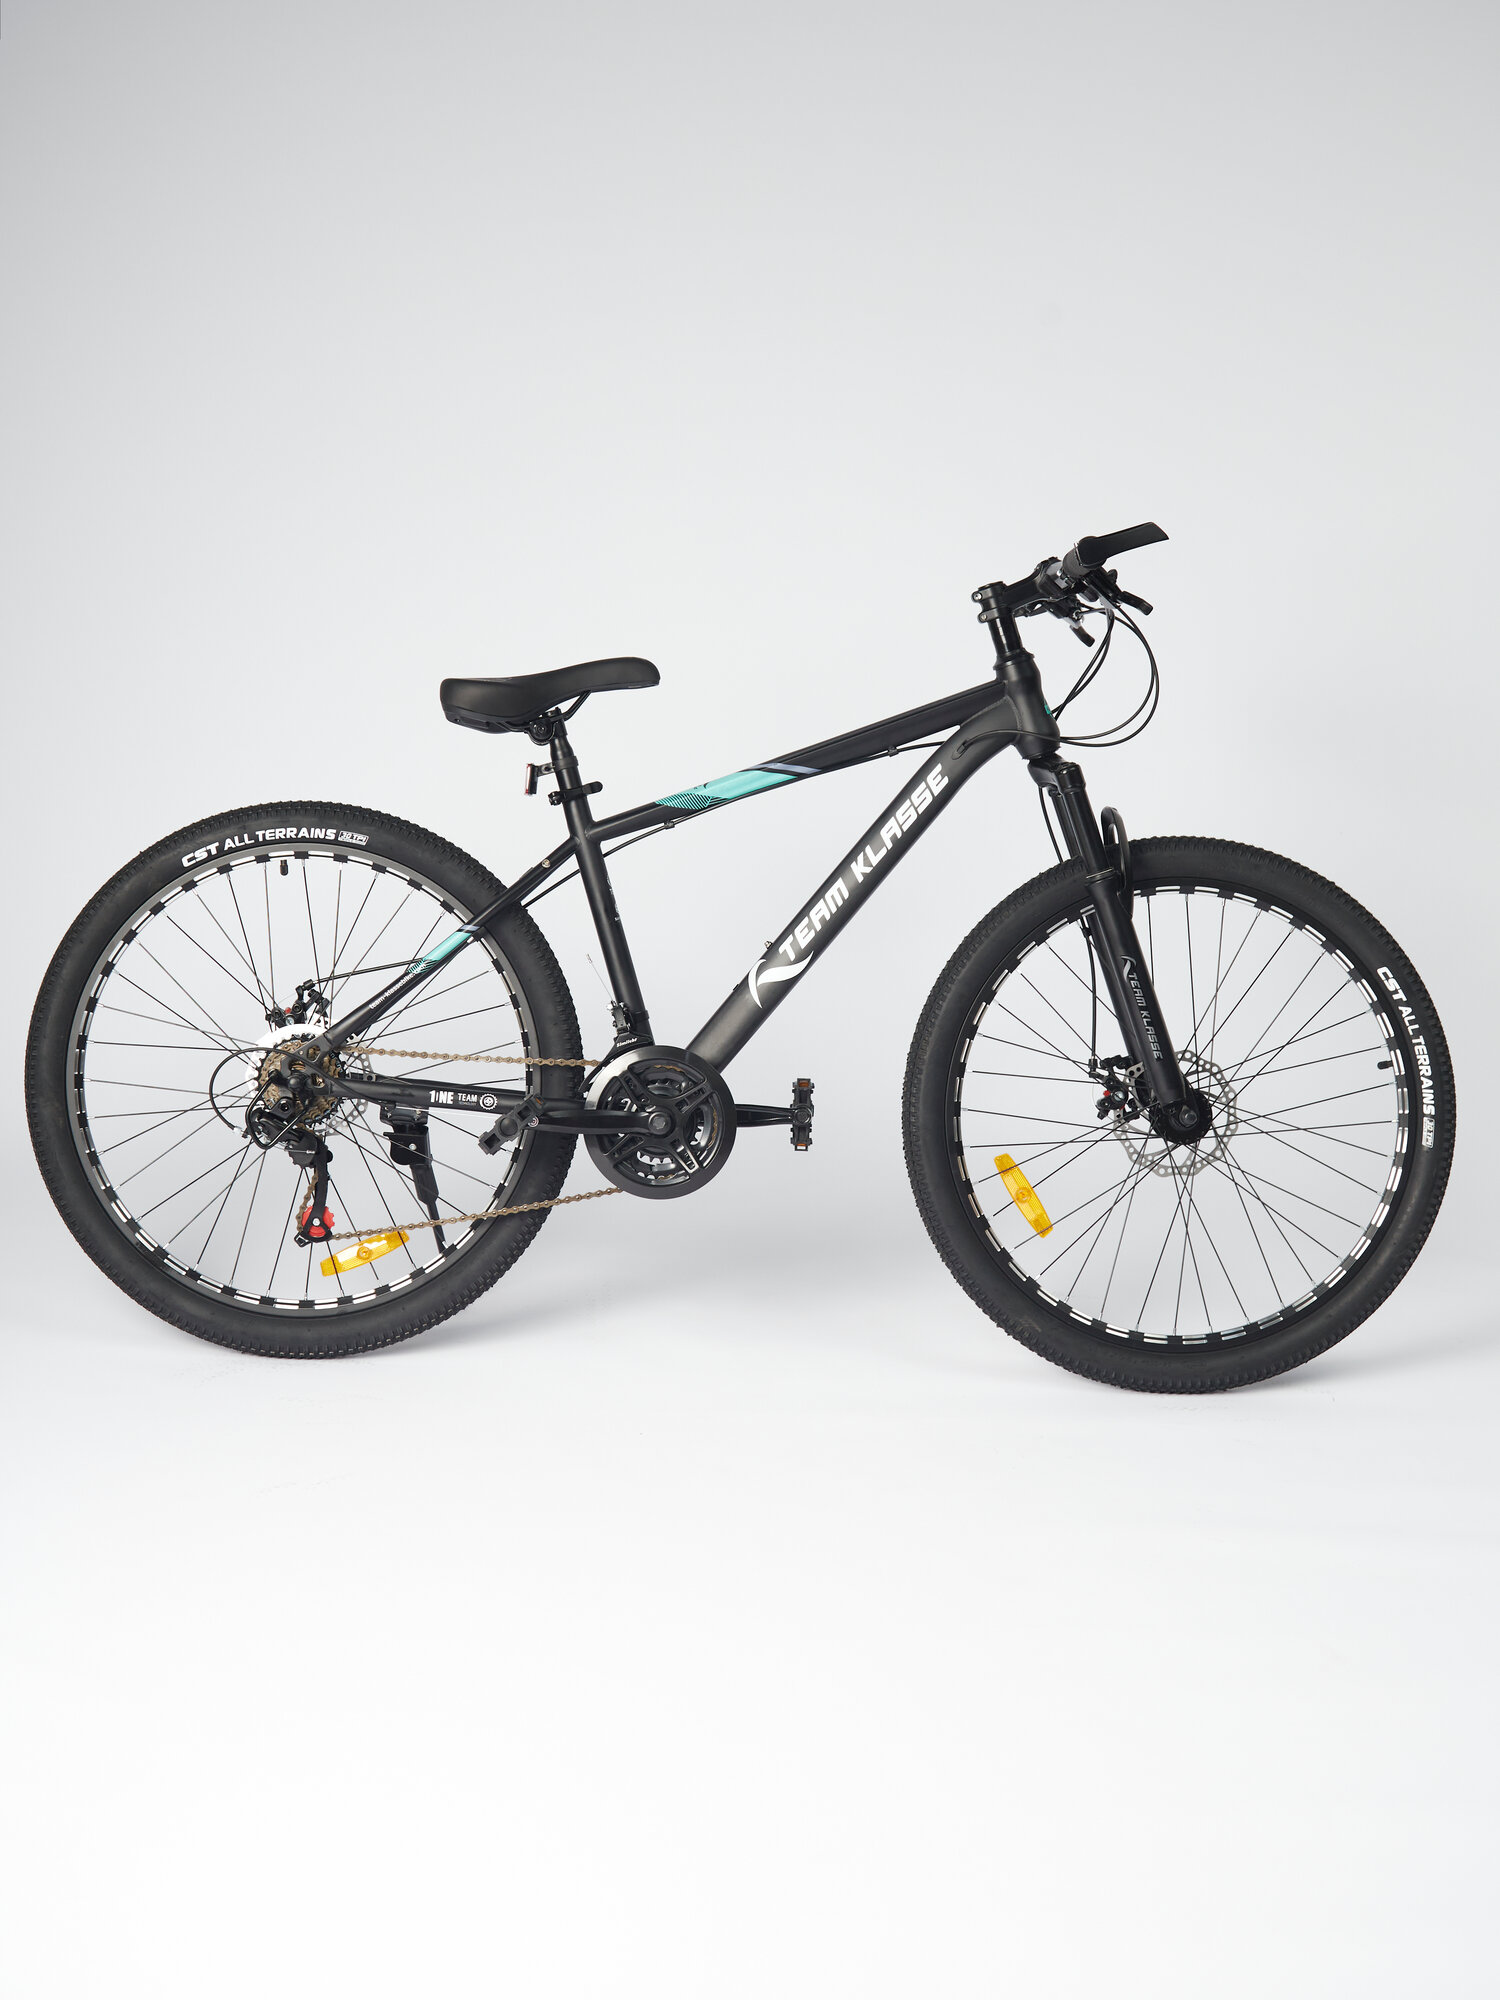 Горный взрослый велосипед Team Klasse B-6-E серый, голубой, диаметр колес 26 дюймов